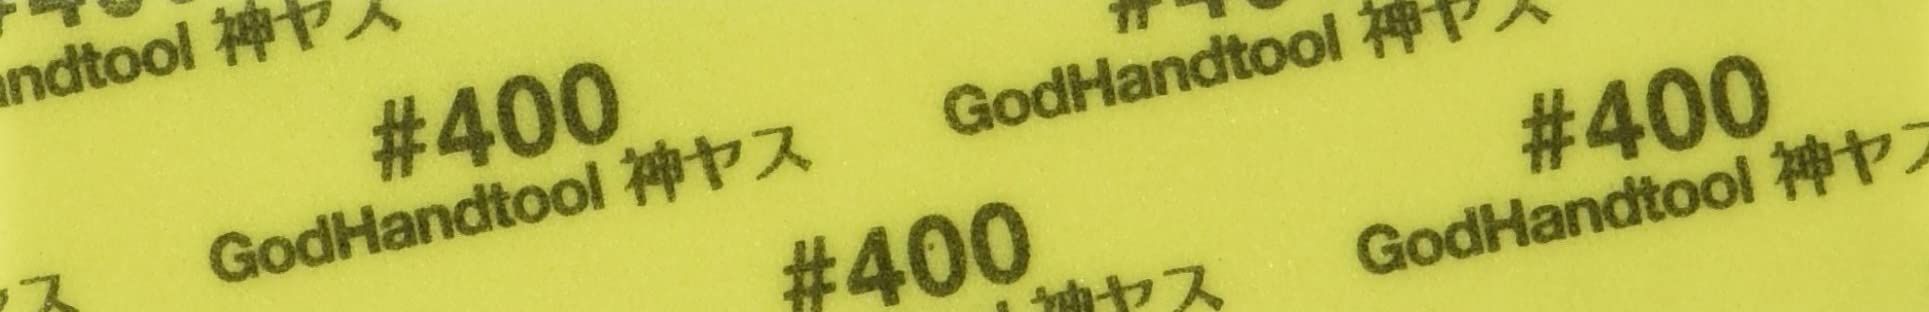 Godhand God-Datei! Schwammtuchfeile 2 mm dick ca. 105 x 20 mm #400 5 Stück Gh-Ks2-P400